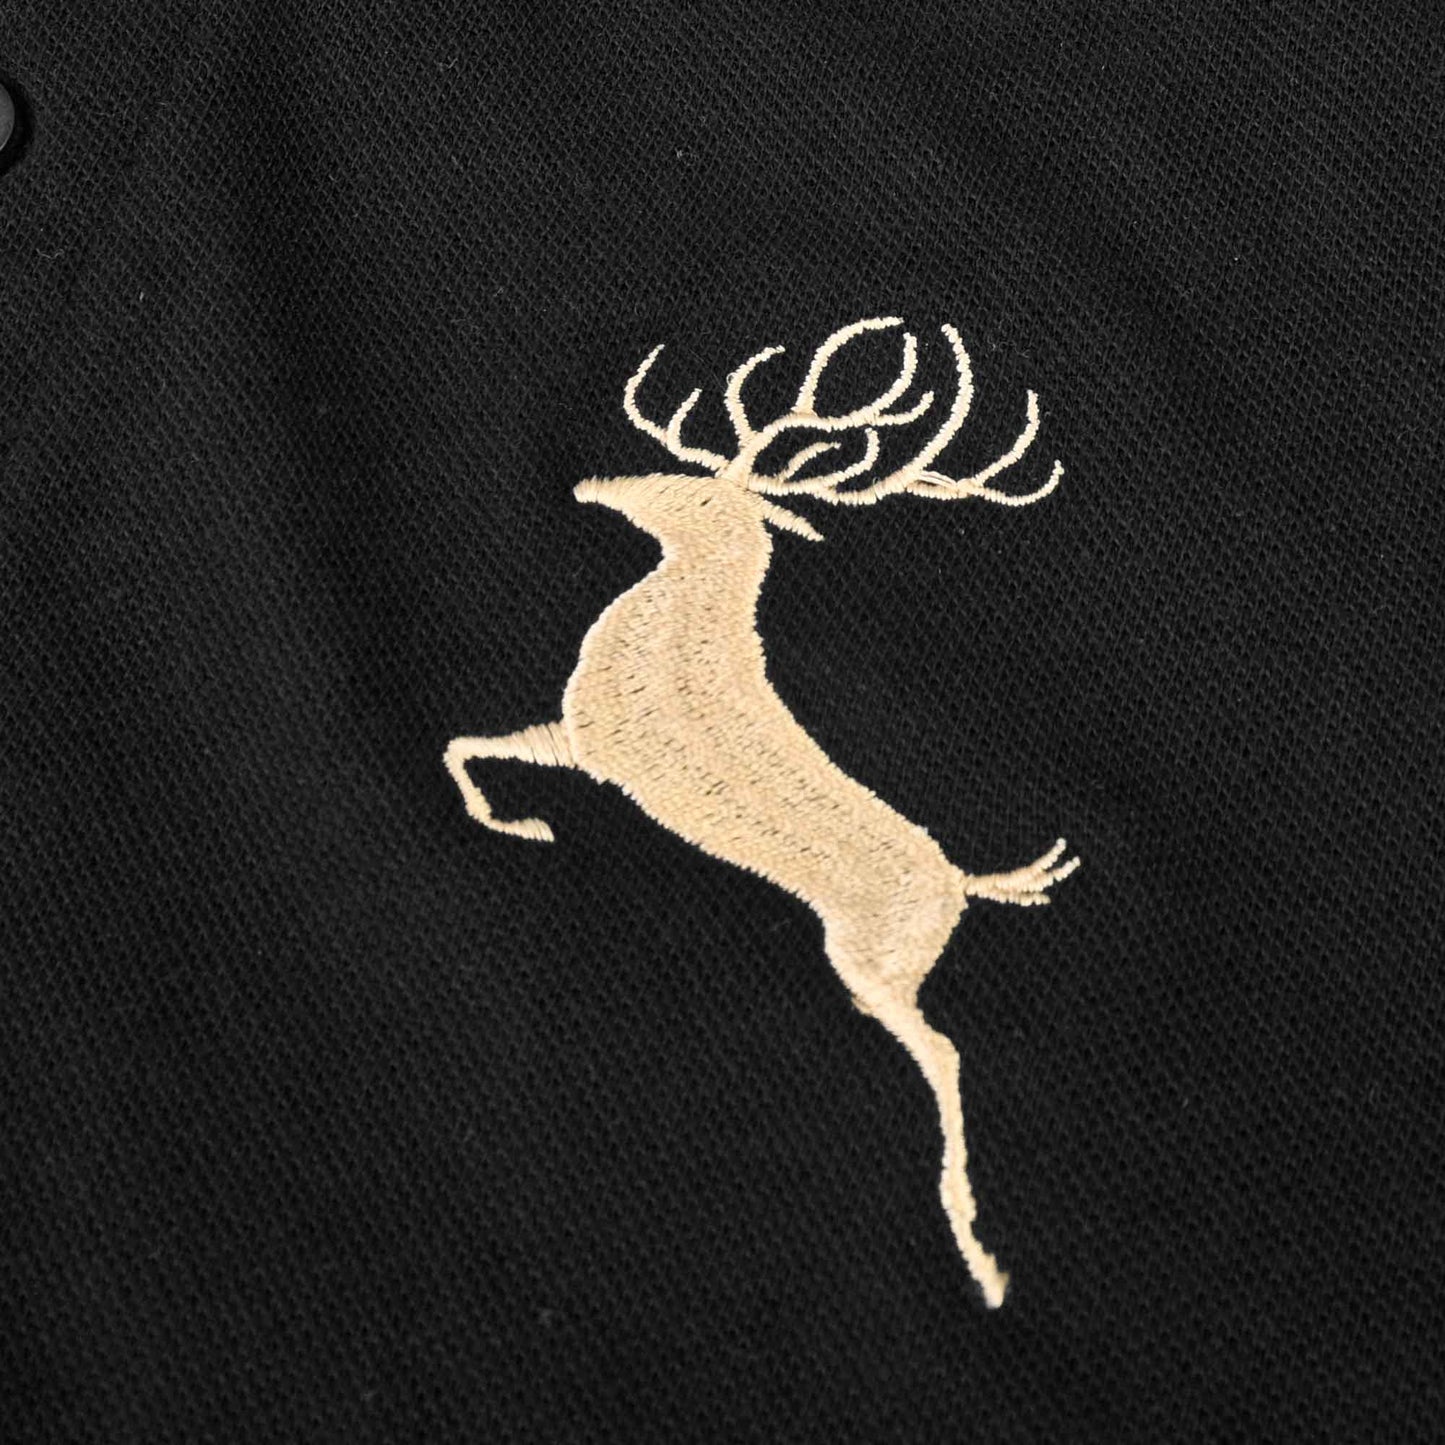 Polo Republica Men's Polo Crest & Deer Embroidered Short Sleeve Polo Shirt Men's Polo Shirt Polo Republica 